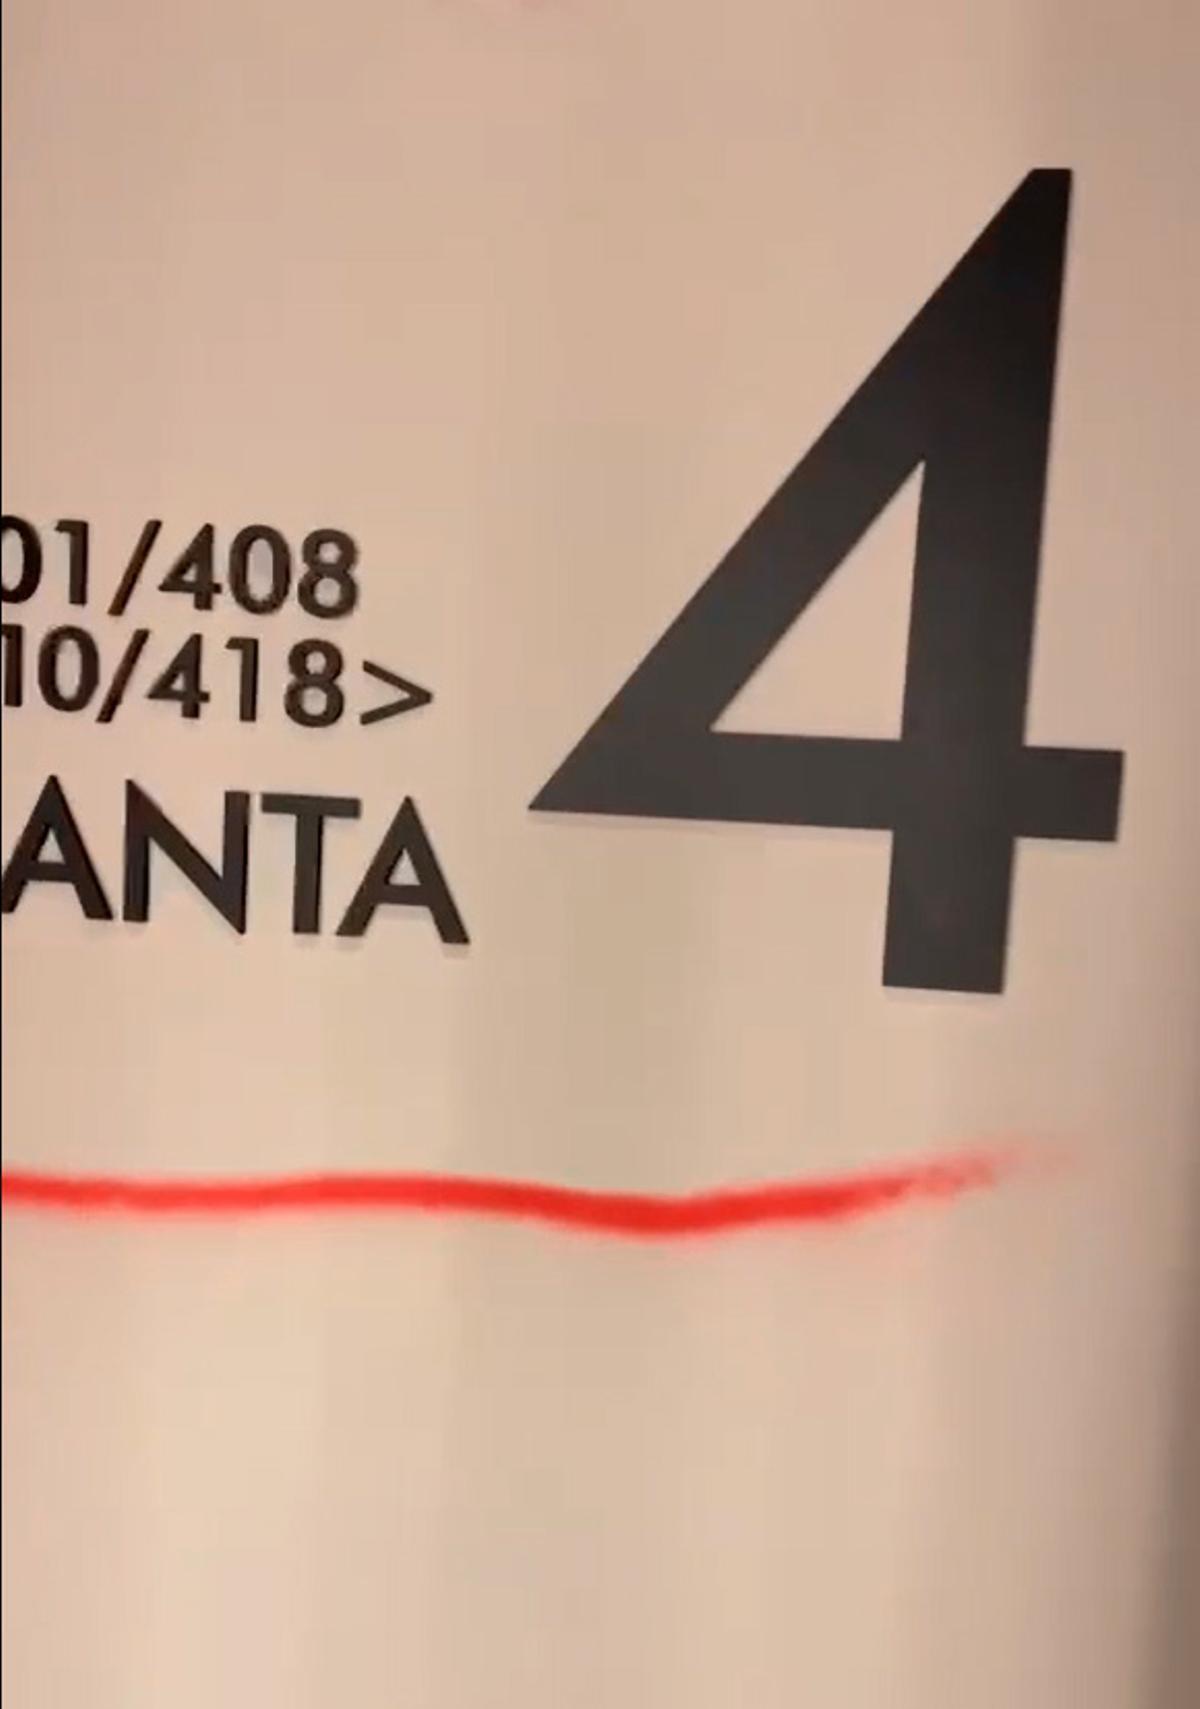 Fotograma del vídeo en el que se ven las pintadas rojas